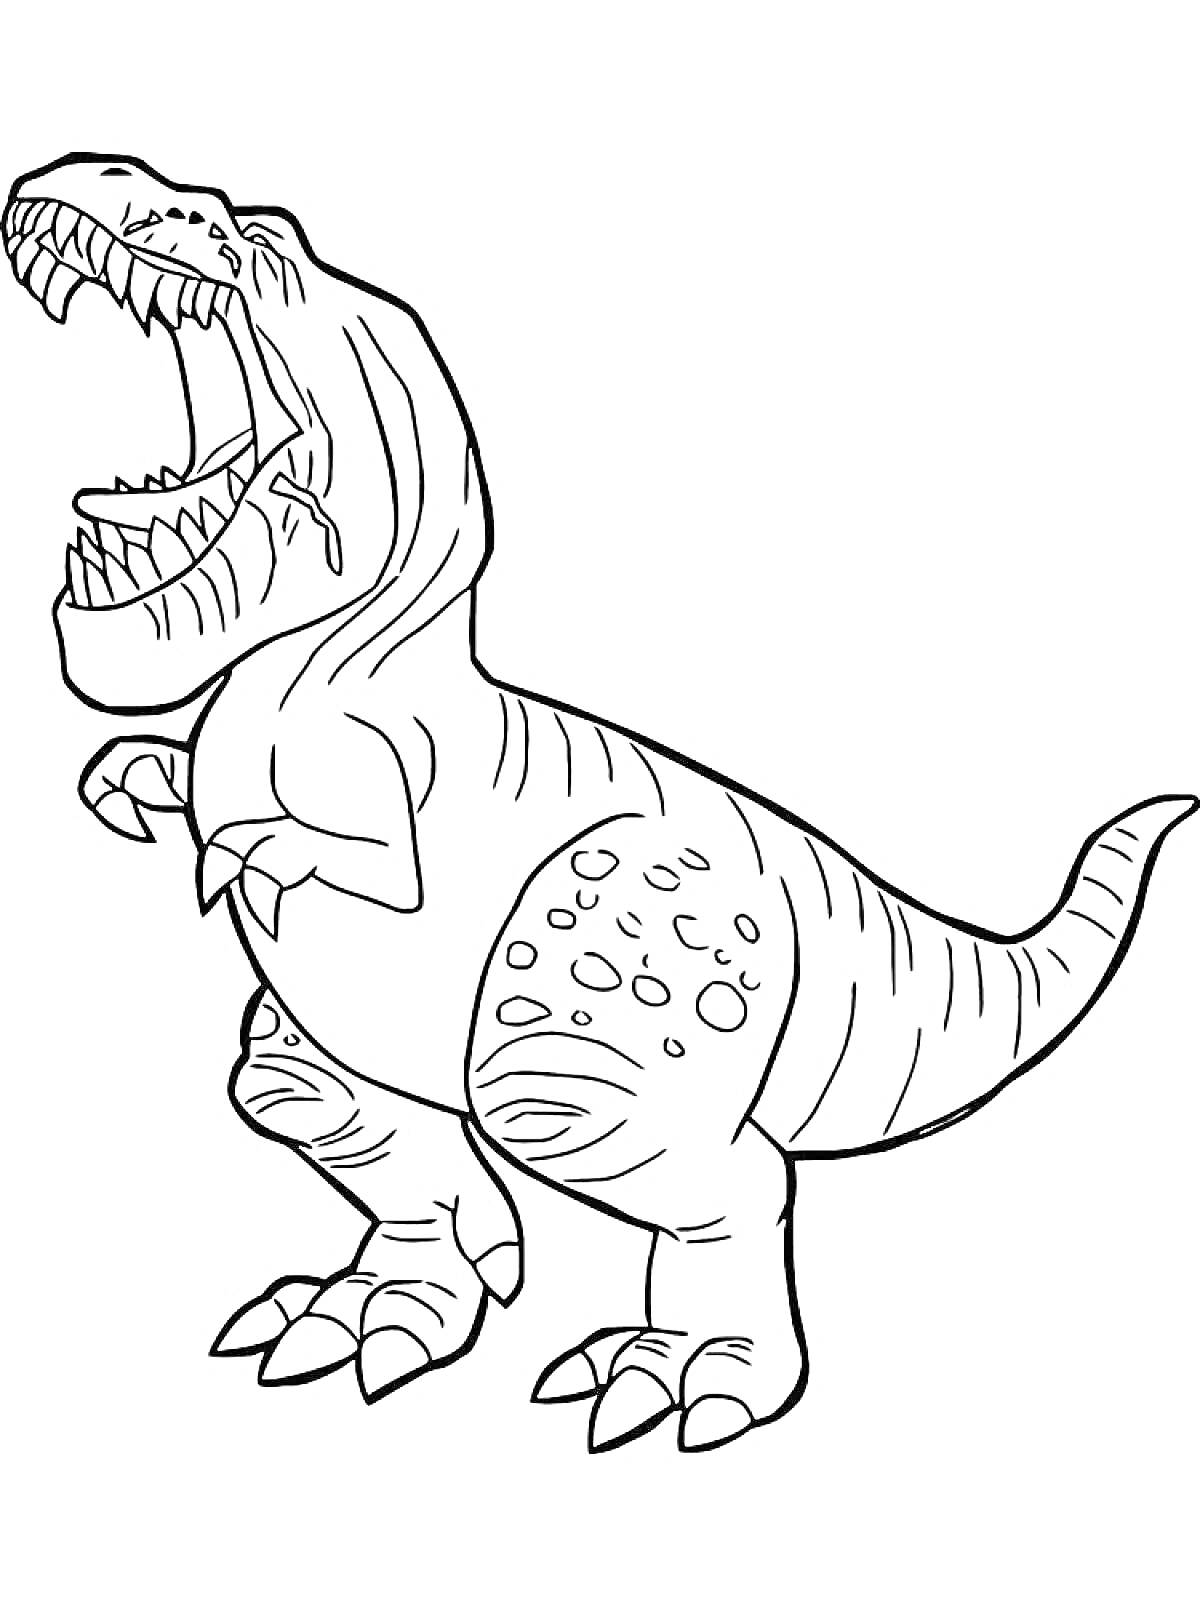 Тираннозавр с раскрытой пастью, стоящий на задних лапах